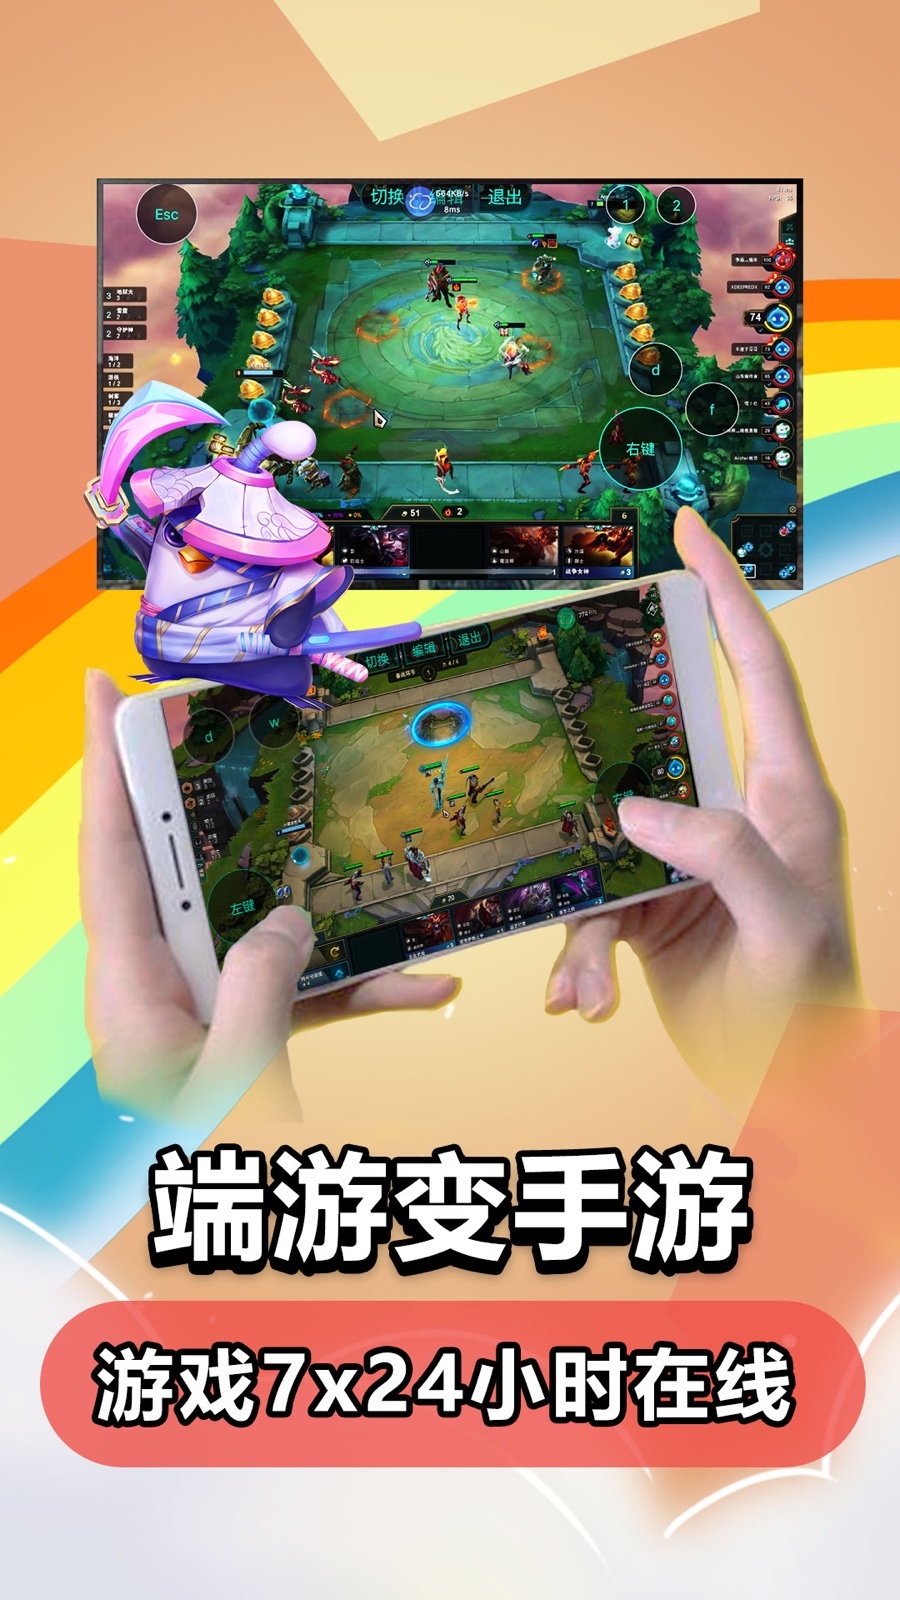 达龙云游戏手机版图3